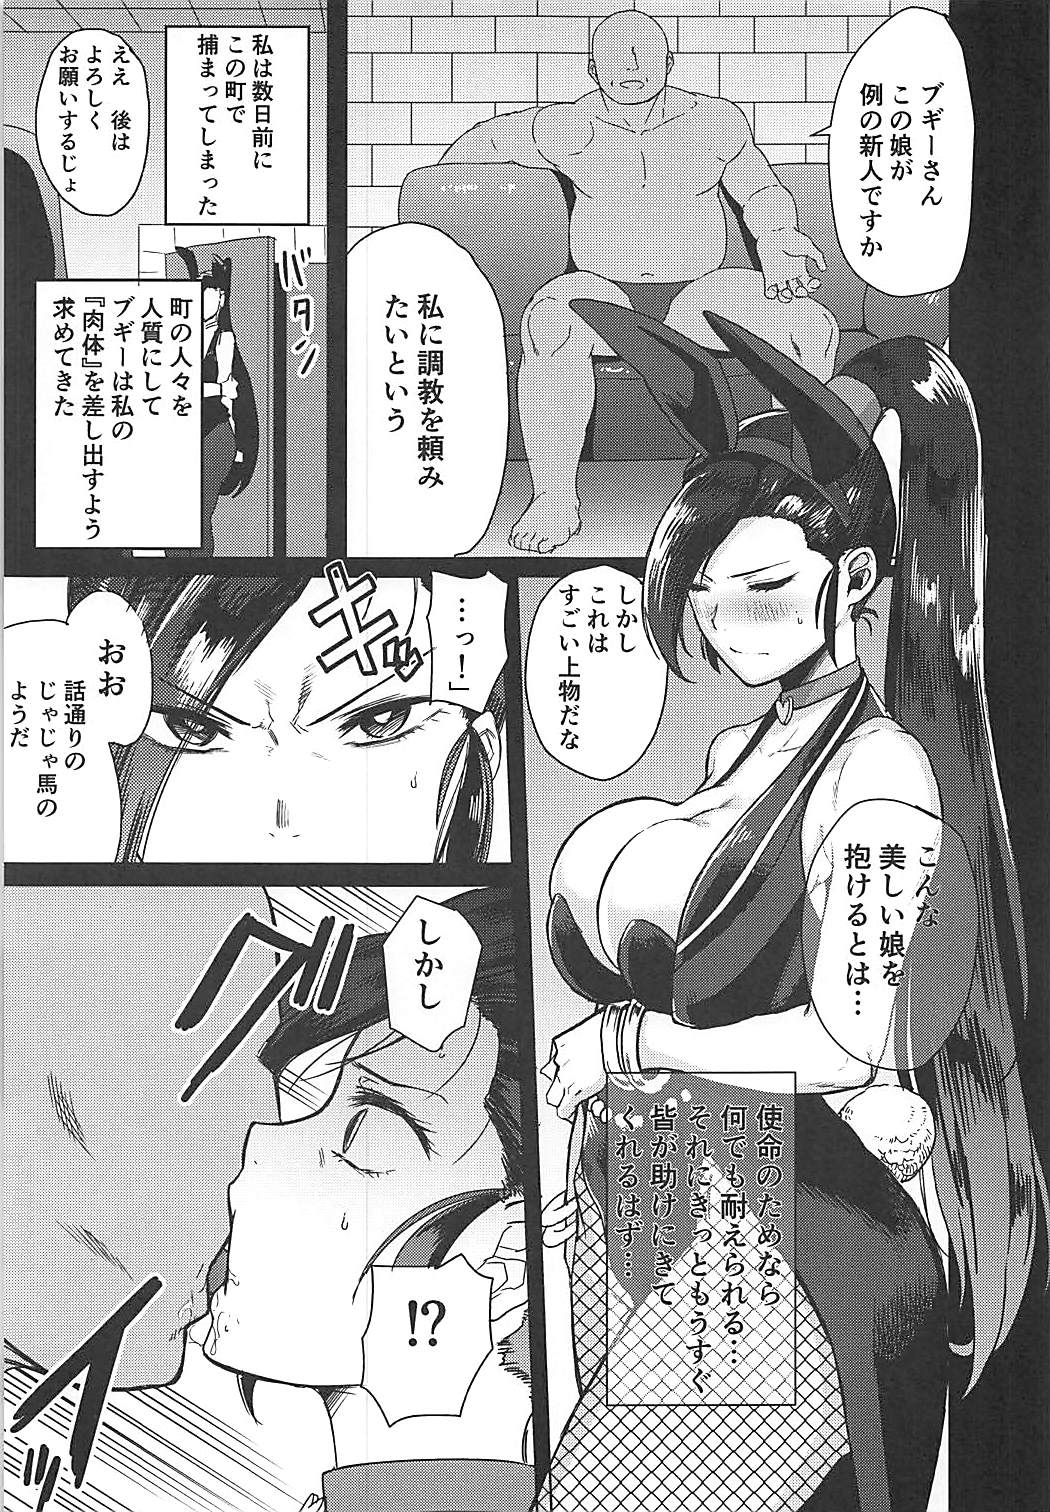 (COMIC1☆13) [DOLL PLAY (黒巣ガタリ)] グロッタの娼姫 (ドラゴンクエストXI)